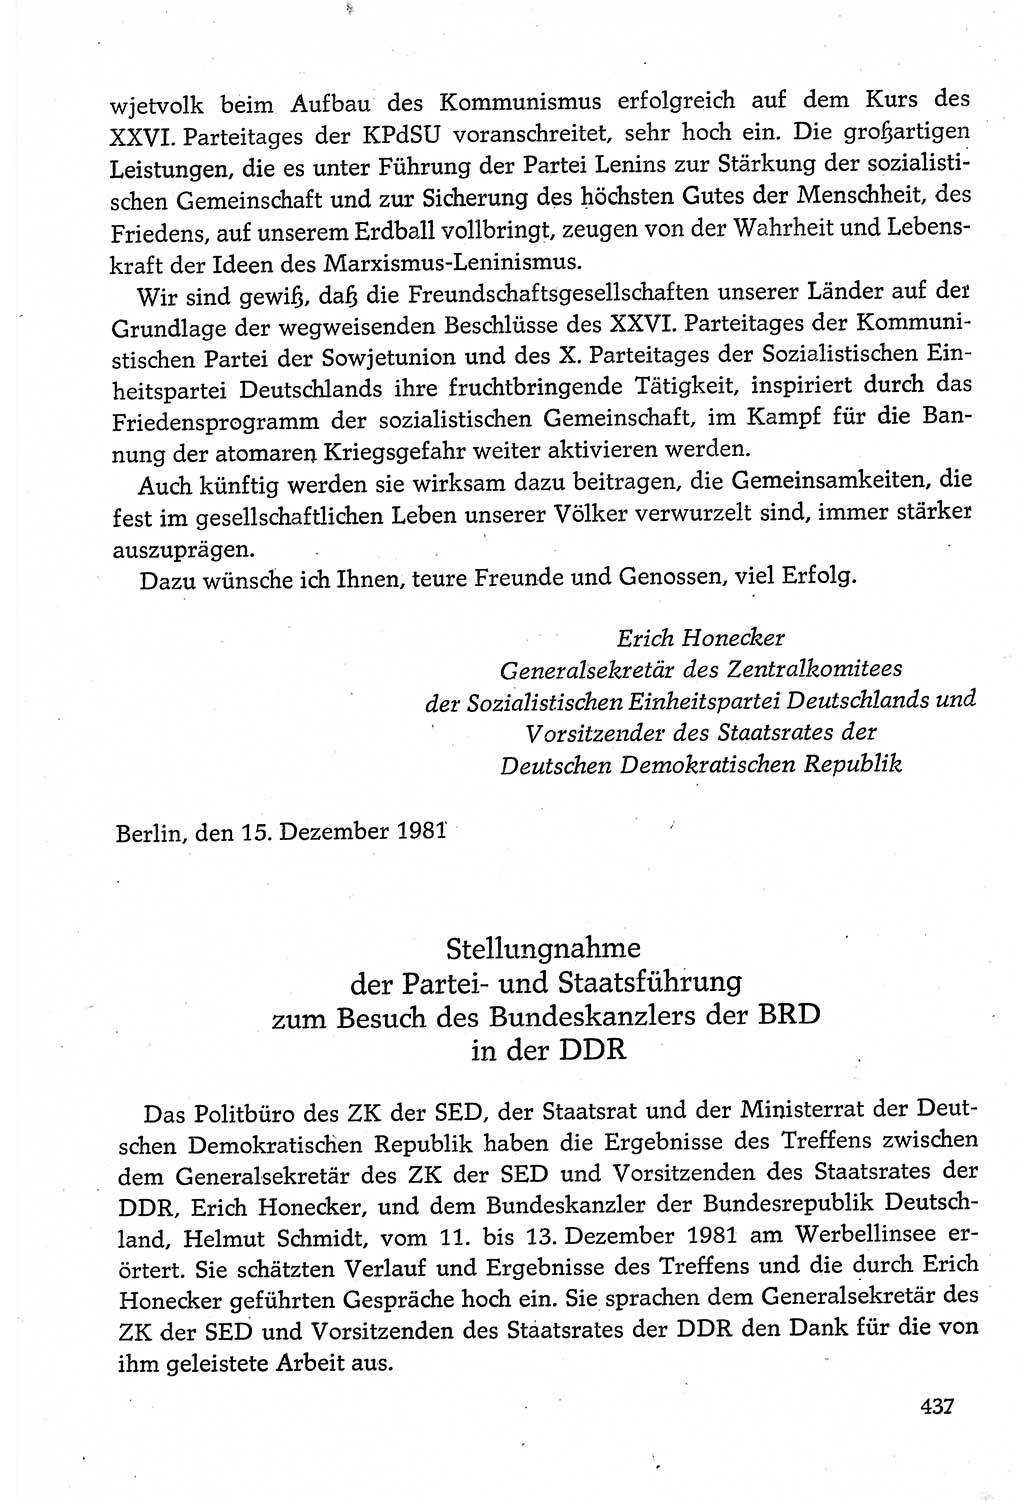 Dokumente der Sozialistischen Einheitspartei Deutschlands (SED) [Deutsche Demokratische Republik (DDR)] 1980-1981, Seite 437 (Dok. SED DDR 1980-1981, S. 437)